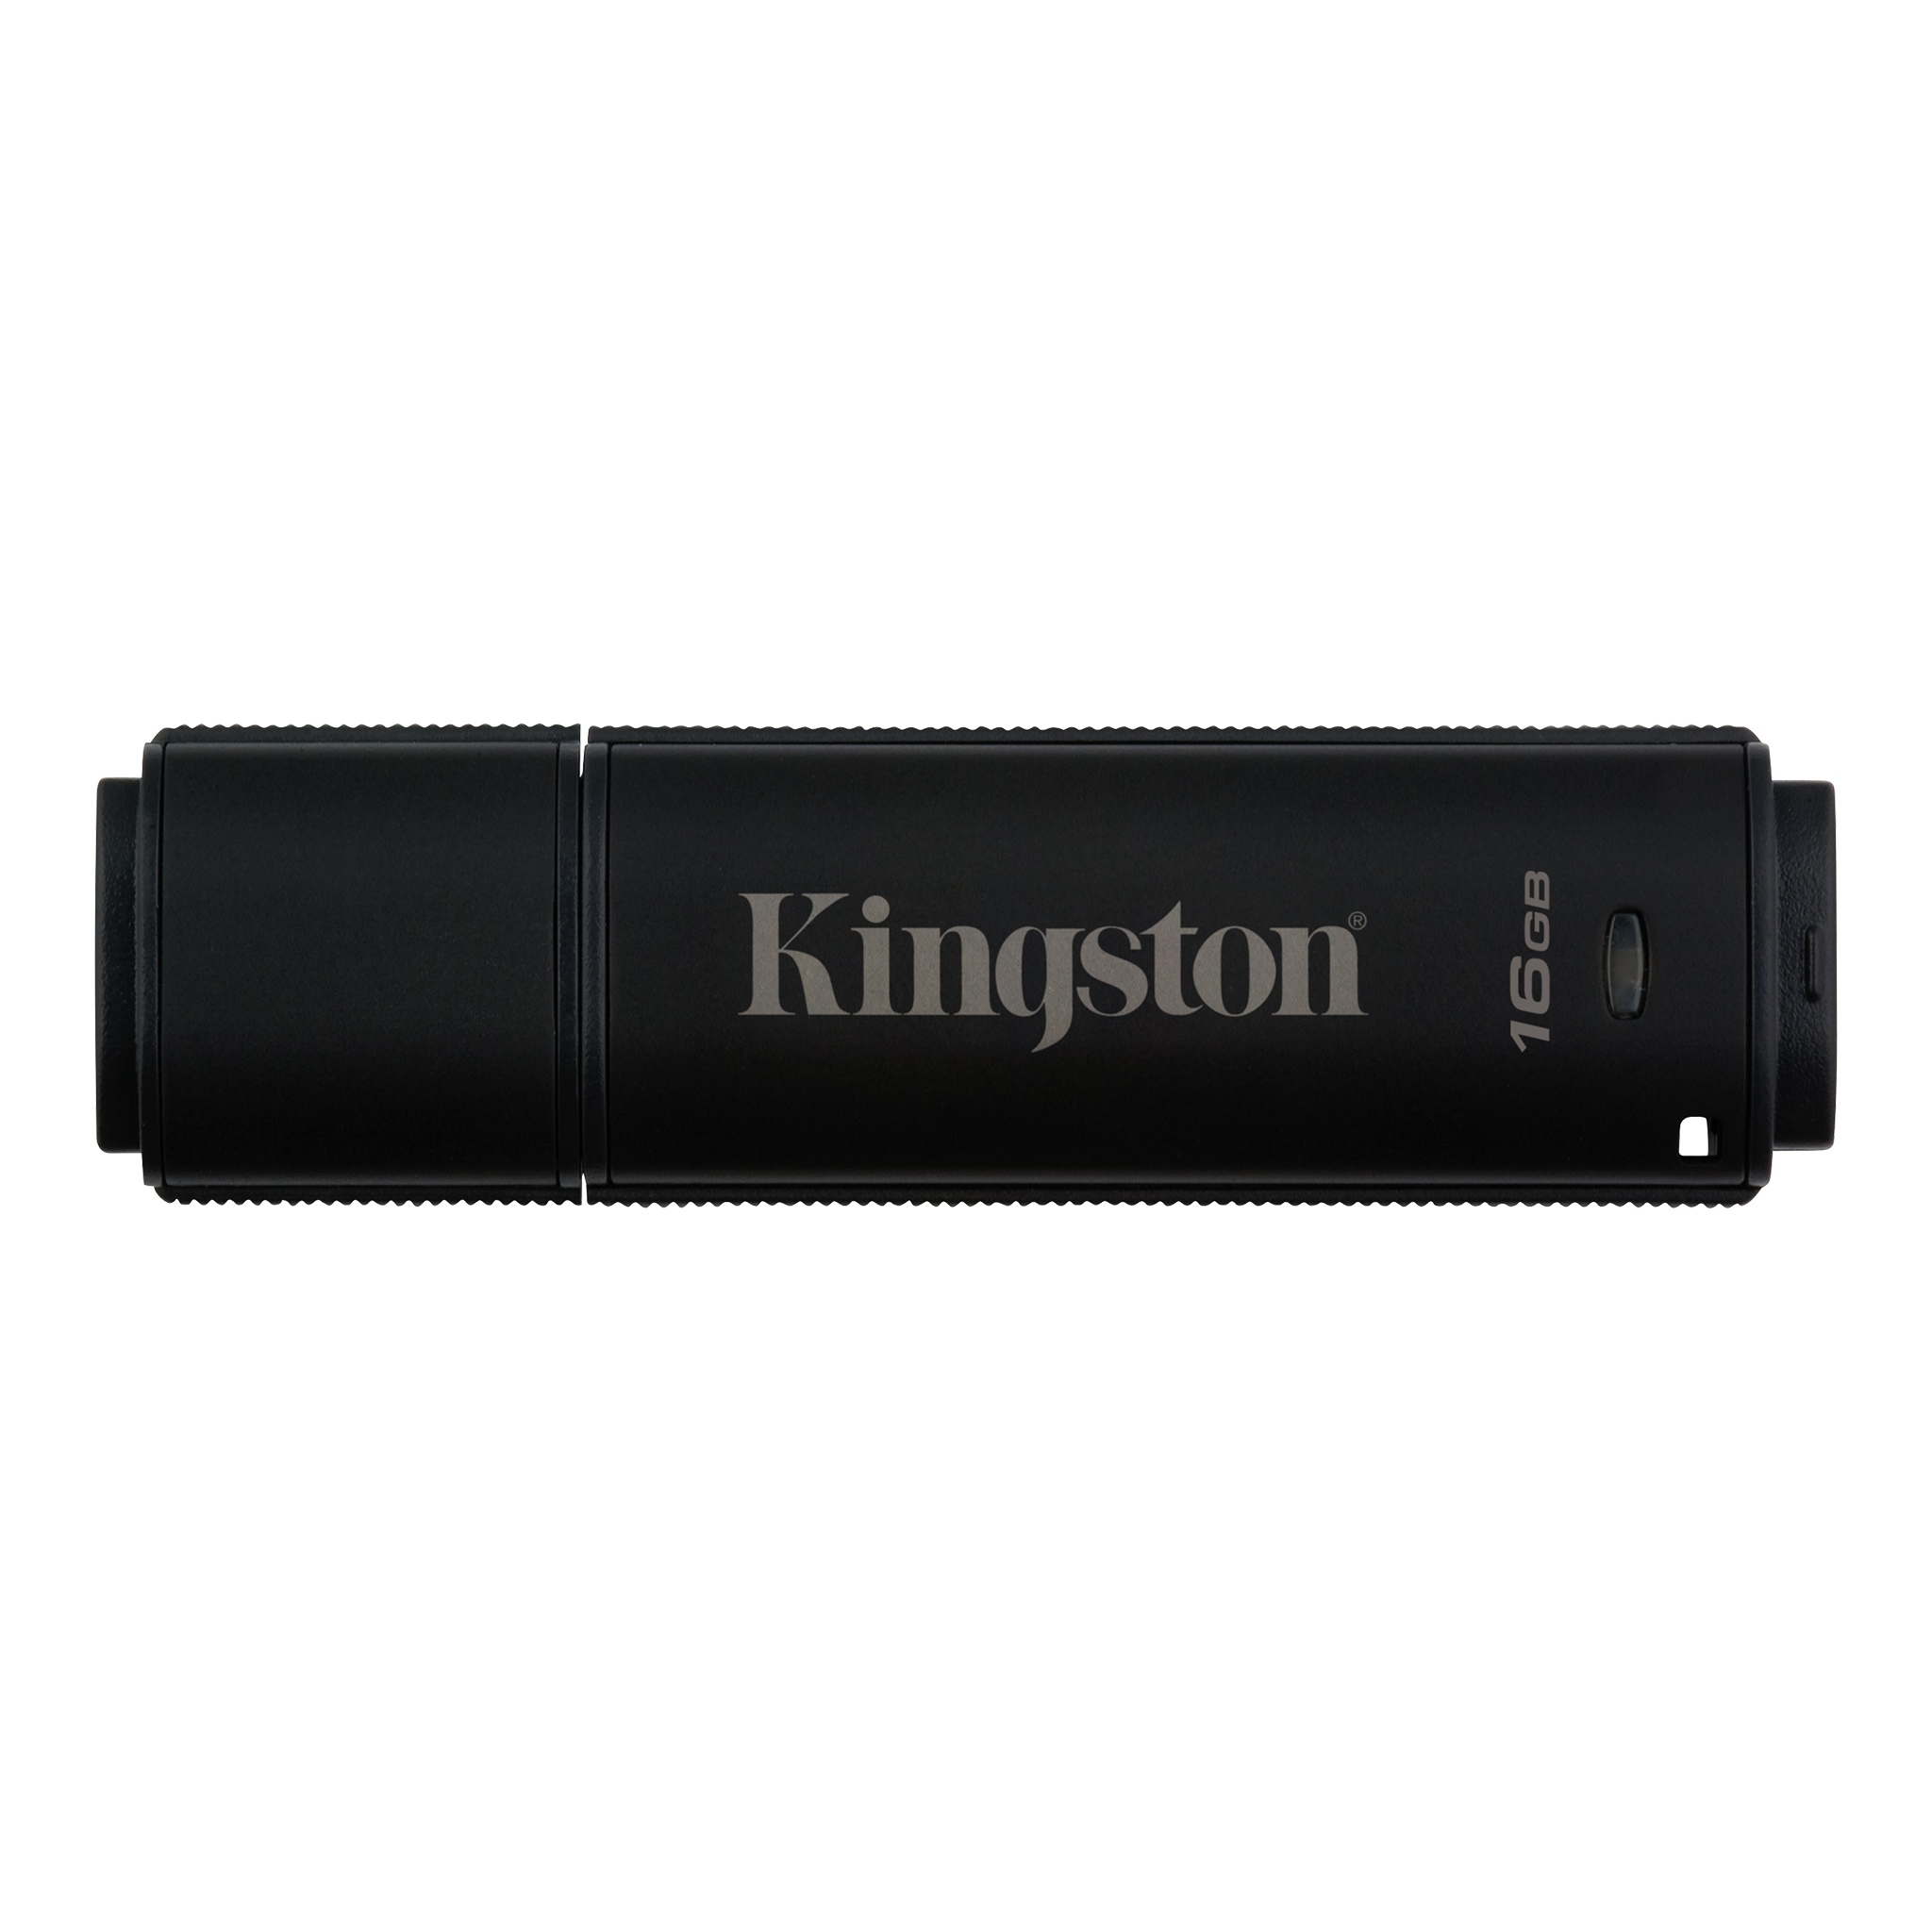 Flash drive kingston datatraveler 4000g2 16gb usb 3.0